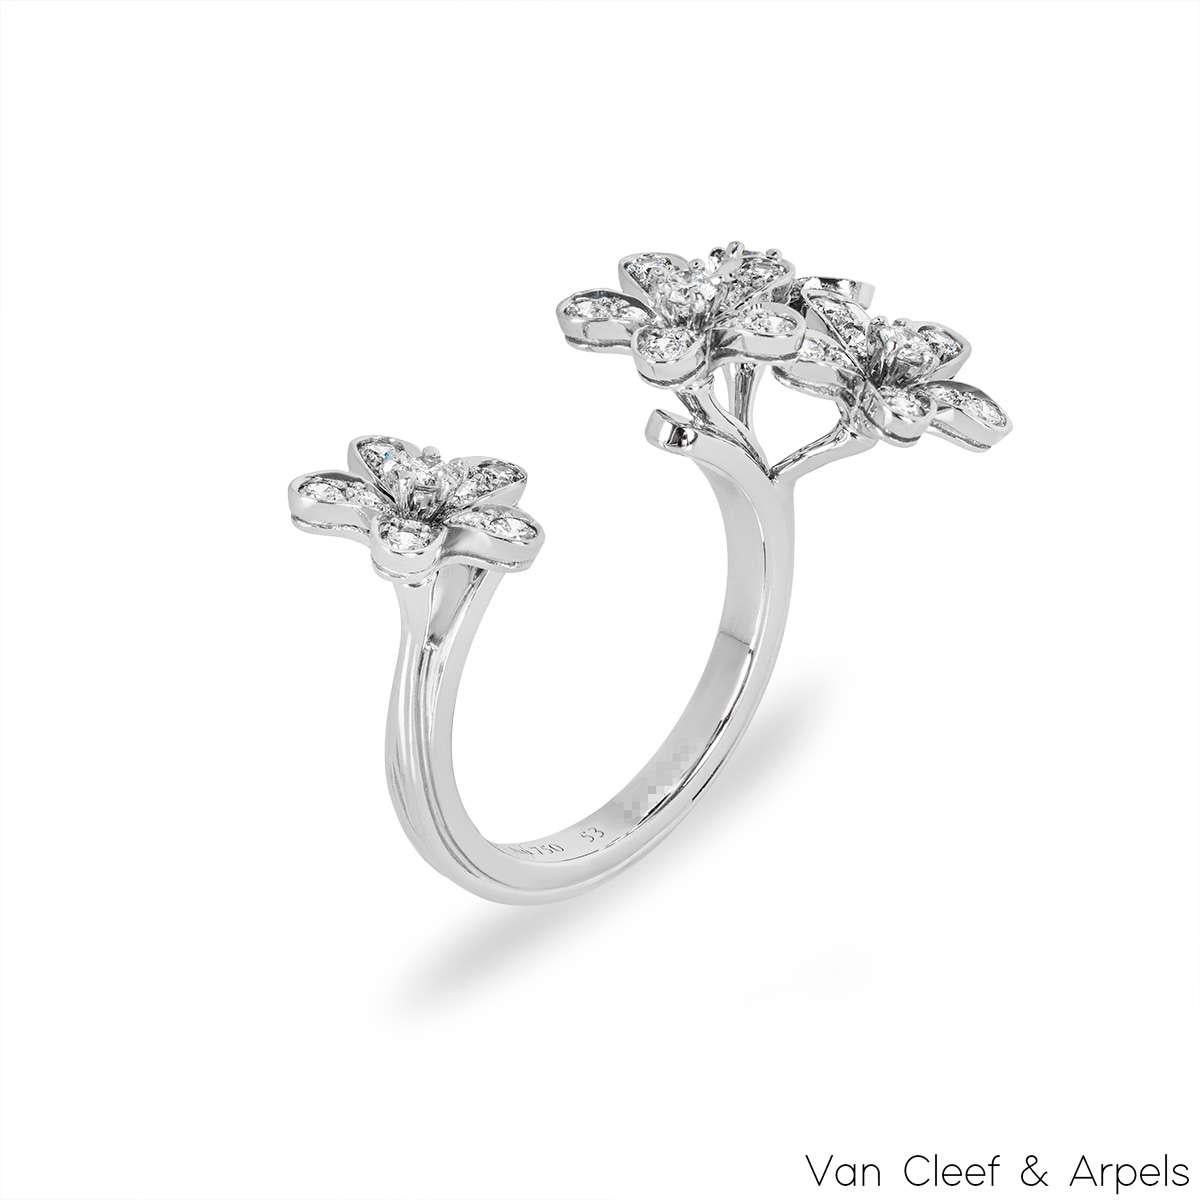 Ein exquisiter Ring aus 18 Karat Weißgold mit Diamanten zwischen den Fingern von Van Cleef & Arpels aus der Kollektion Socrate. Der Ring besteht aus 3 diamantbesetzten Blumenmotiven auf der einen Seite und 1 diamantbesetzten Blumenmotiv auf der